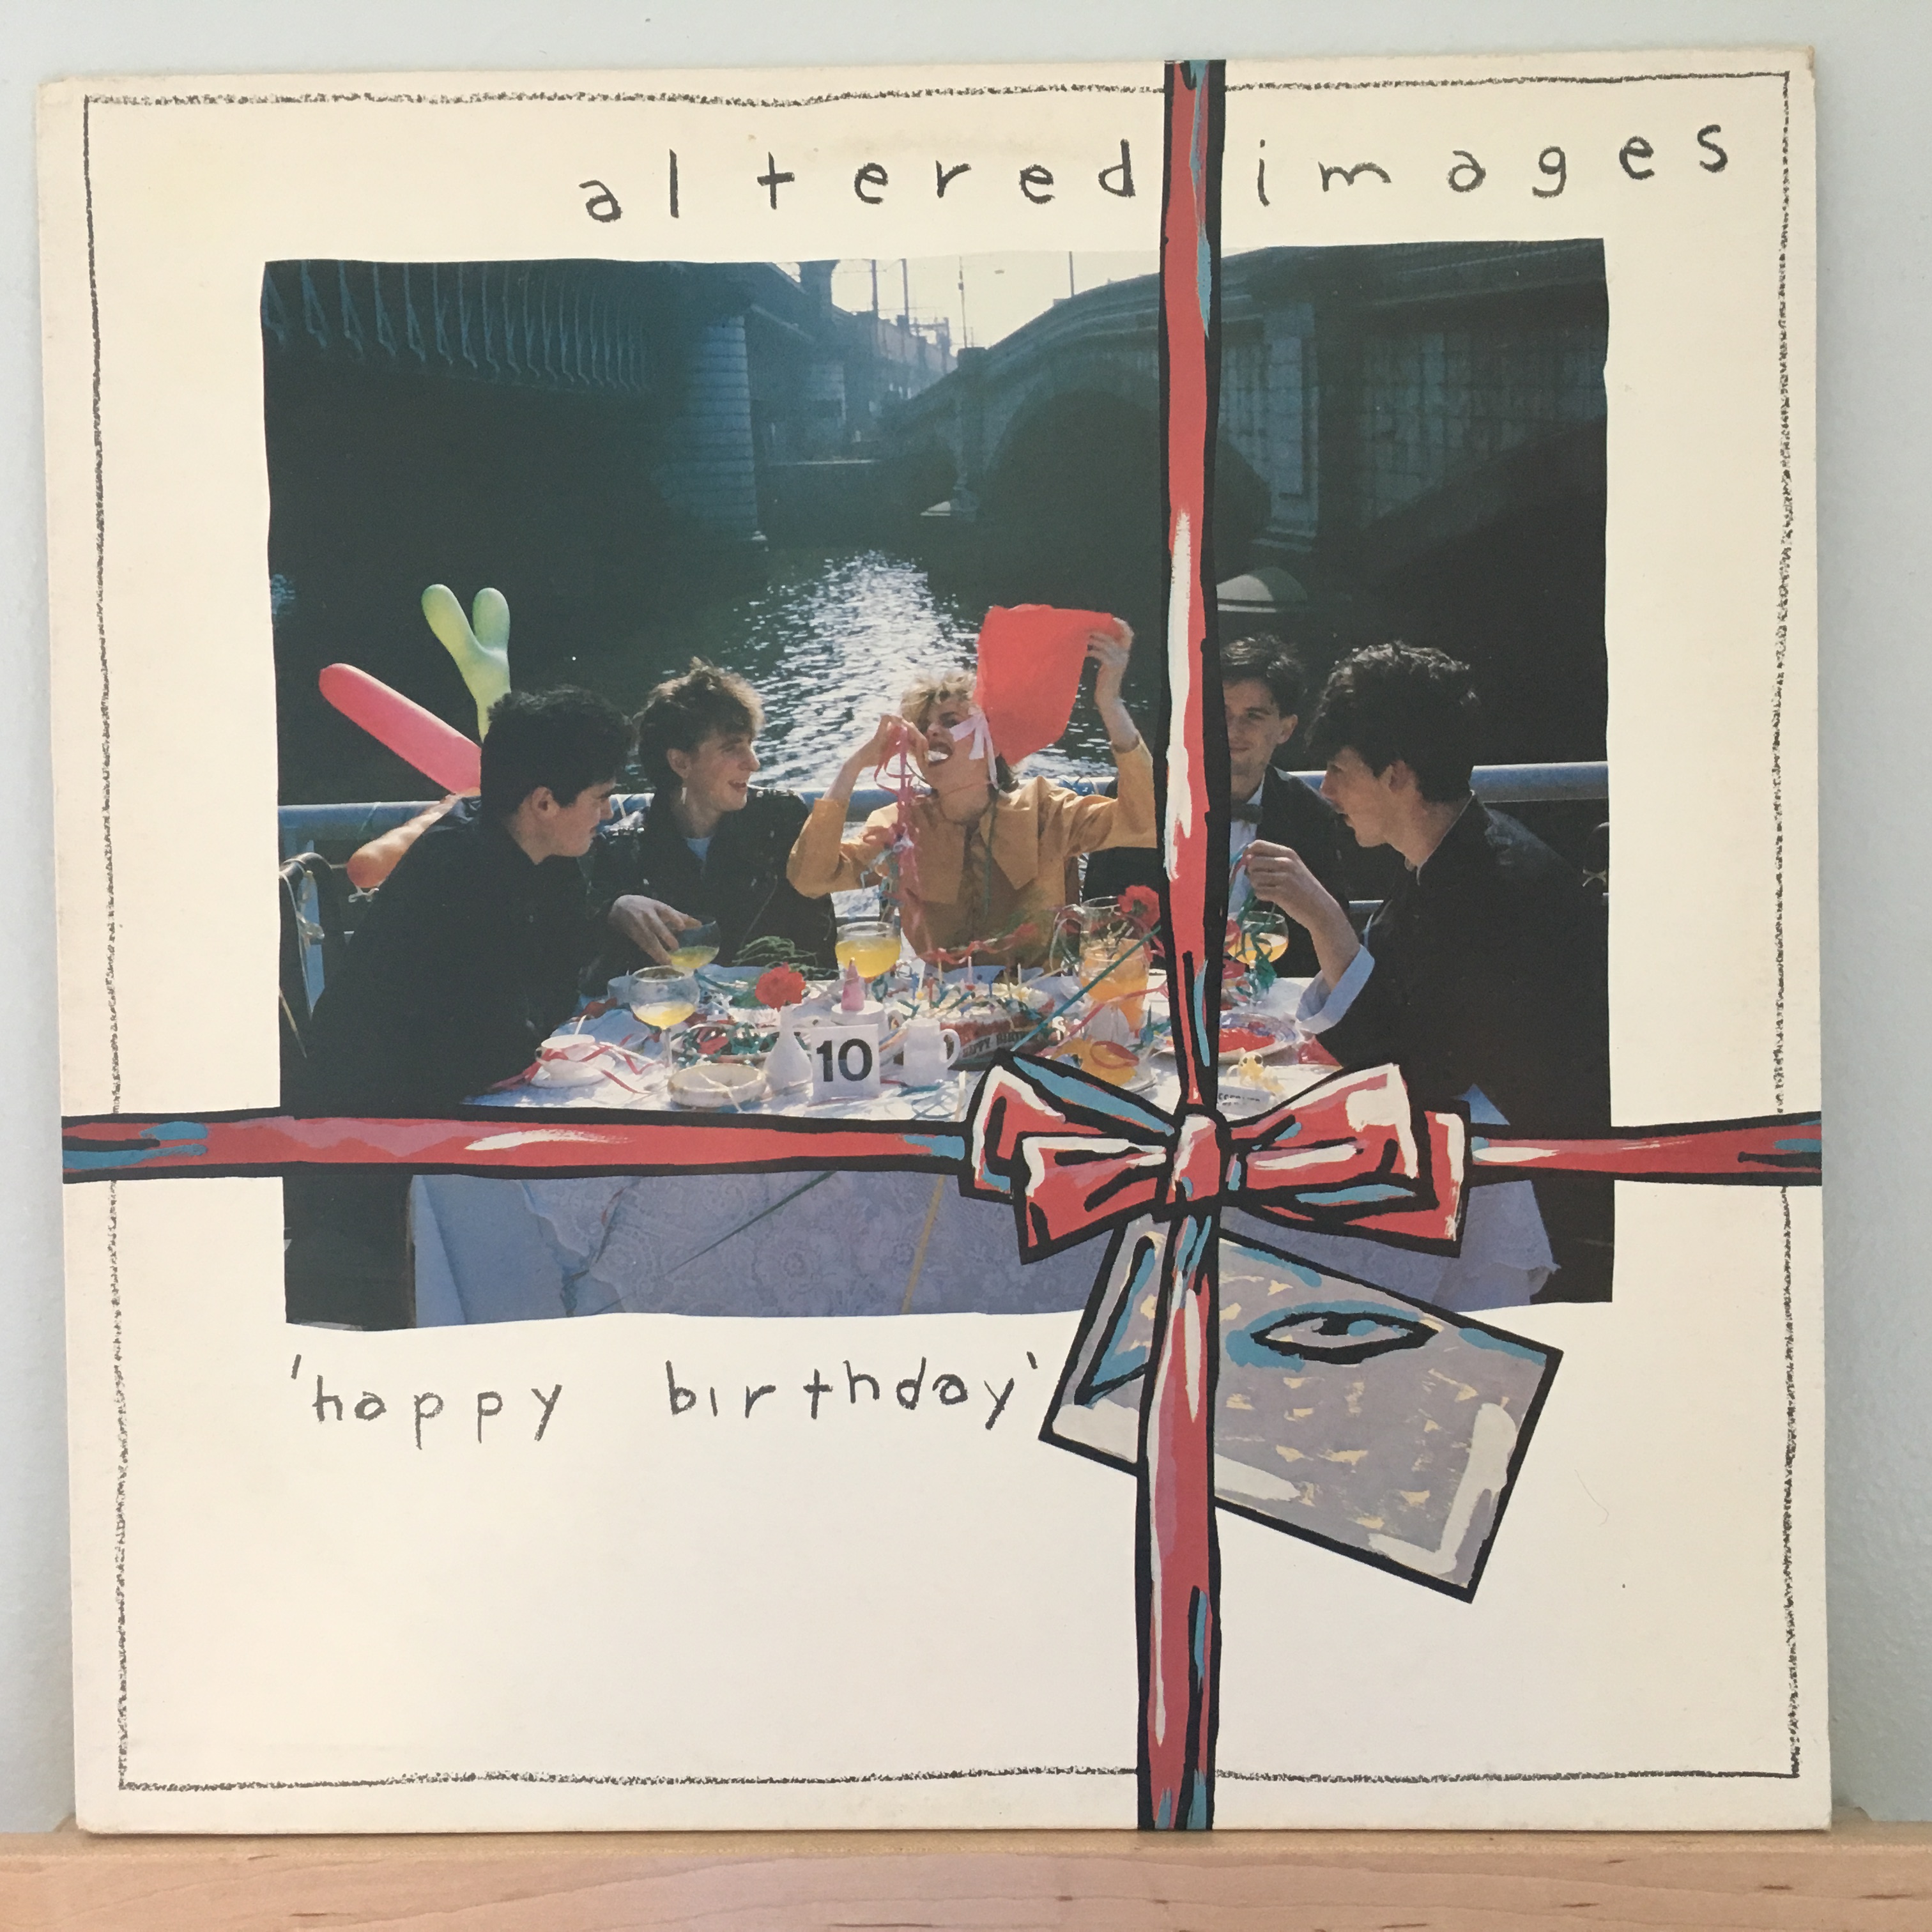 Happy Birthday album front cover